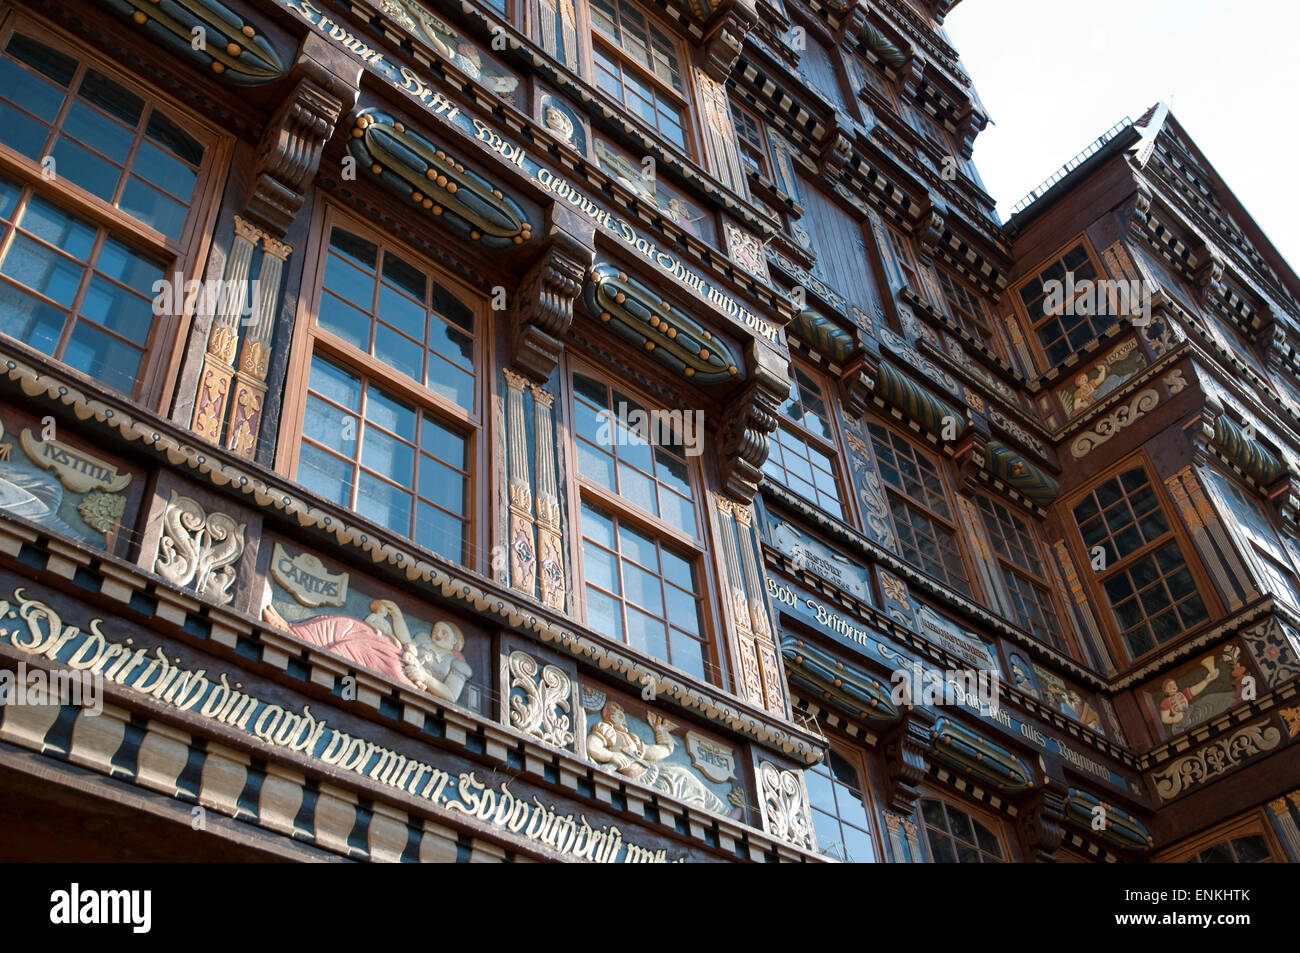 Historisches Gebäude am Marktplatz, Hildesheim, Niedersachsen, Deutschland Stockfoto